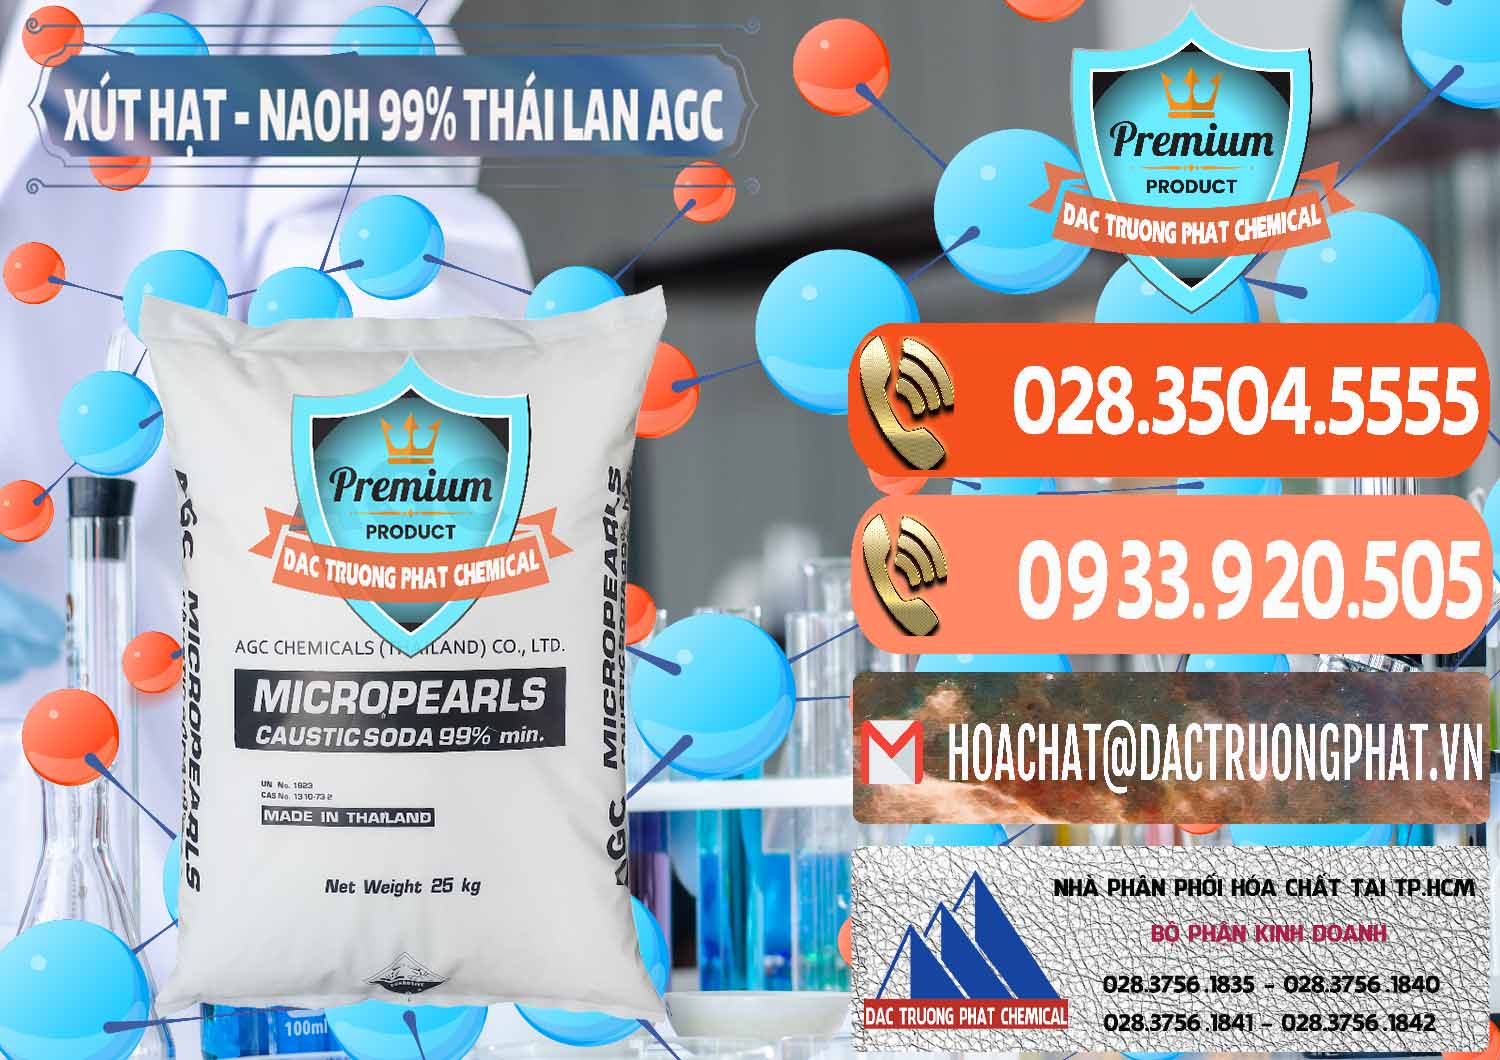 Chuyên cung cấp & bán Xút Hạt - NaOH Bột 99% AGC Thái Lan - 0168 - Cty chuyên kinh doanh _ phân phối hóa chất tại TP.HCM - hoachatmientay.com